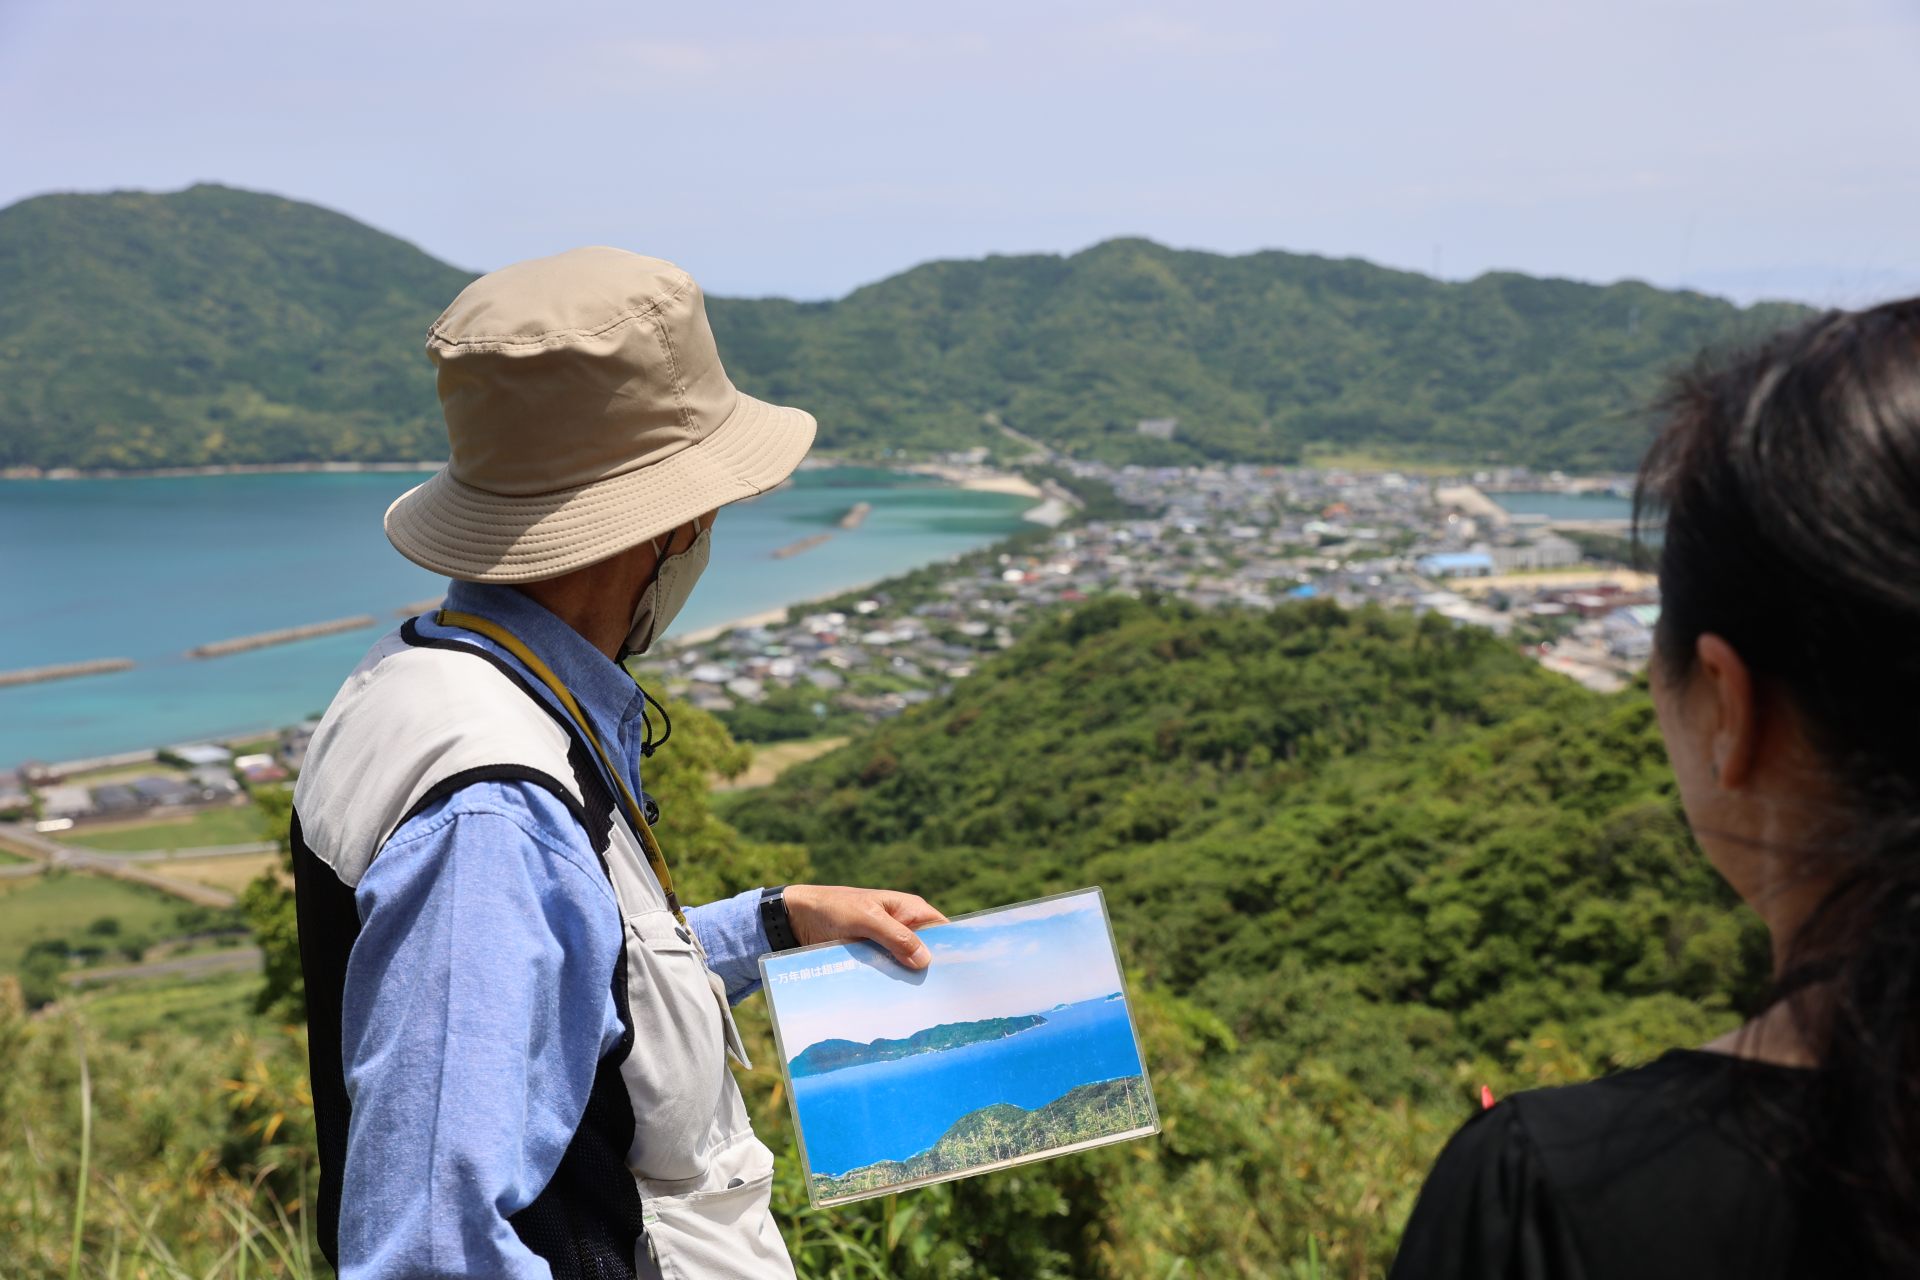 日本3大トンボロ（陸繋砂州）のひとつがある上甑島。また下甑島には断崖の絶景も多い